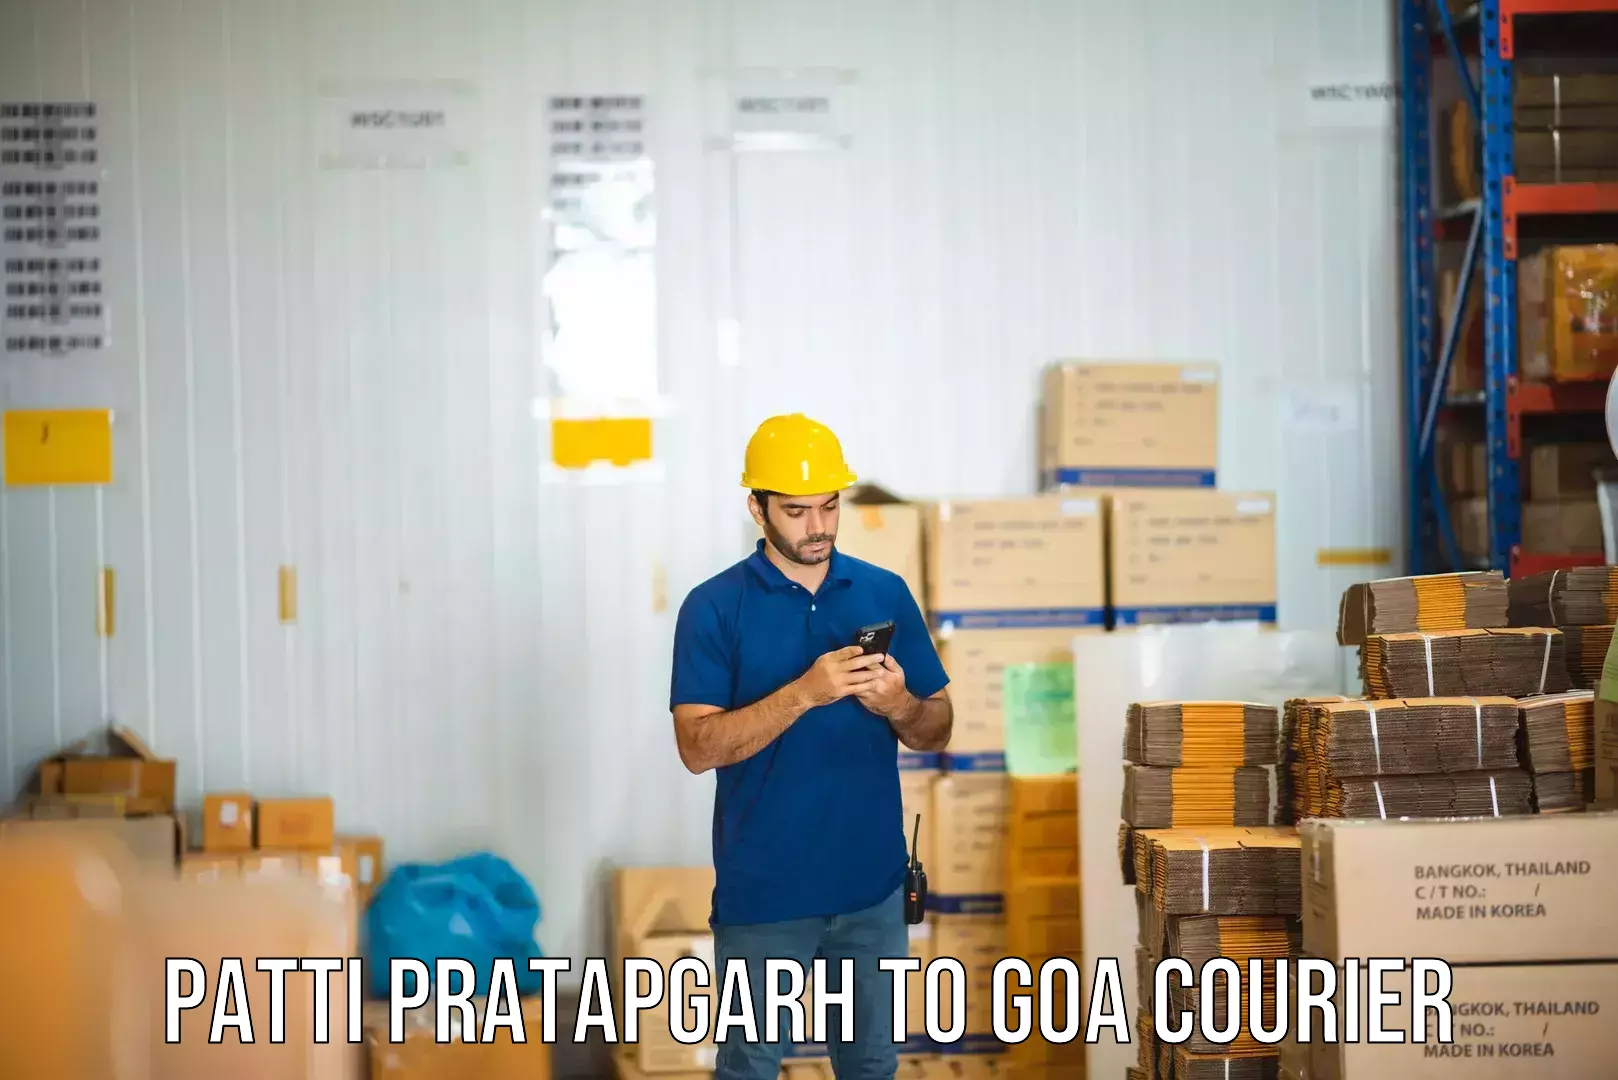 Enhanced tracking features Patti Pratapgarh to IIT Goa